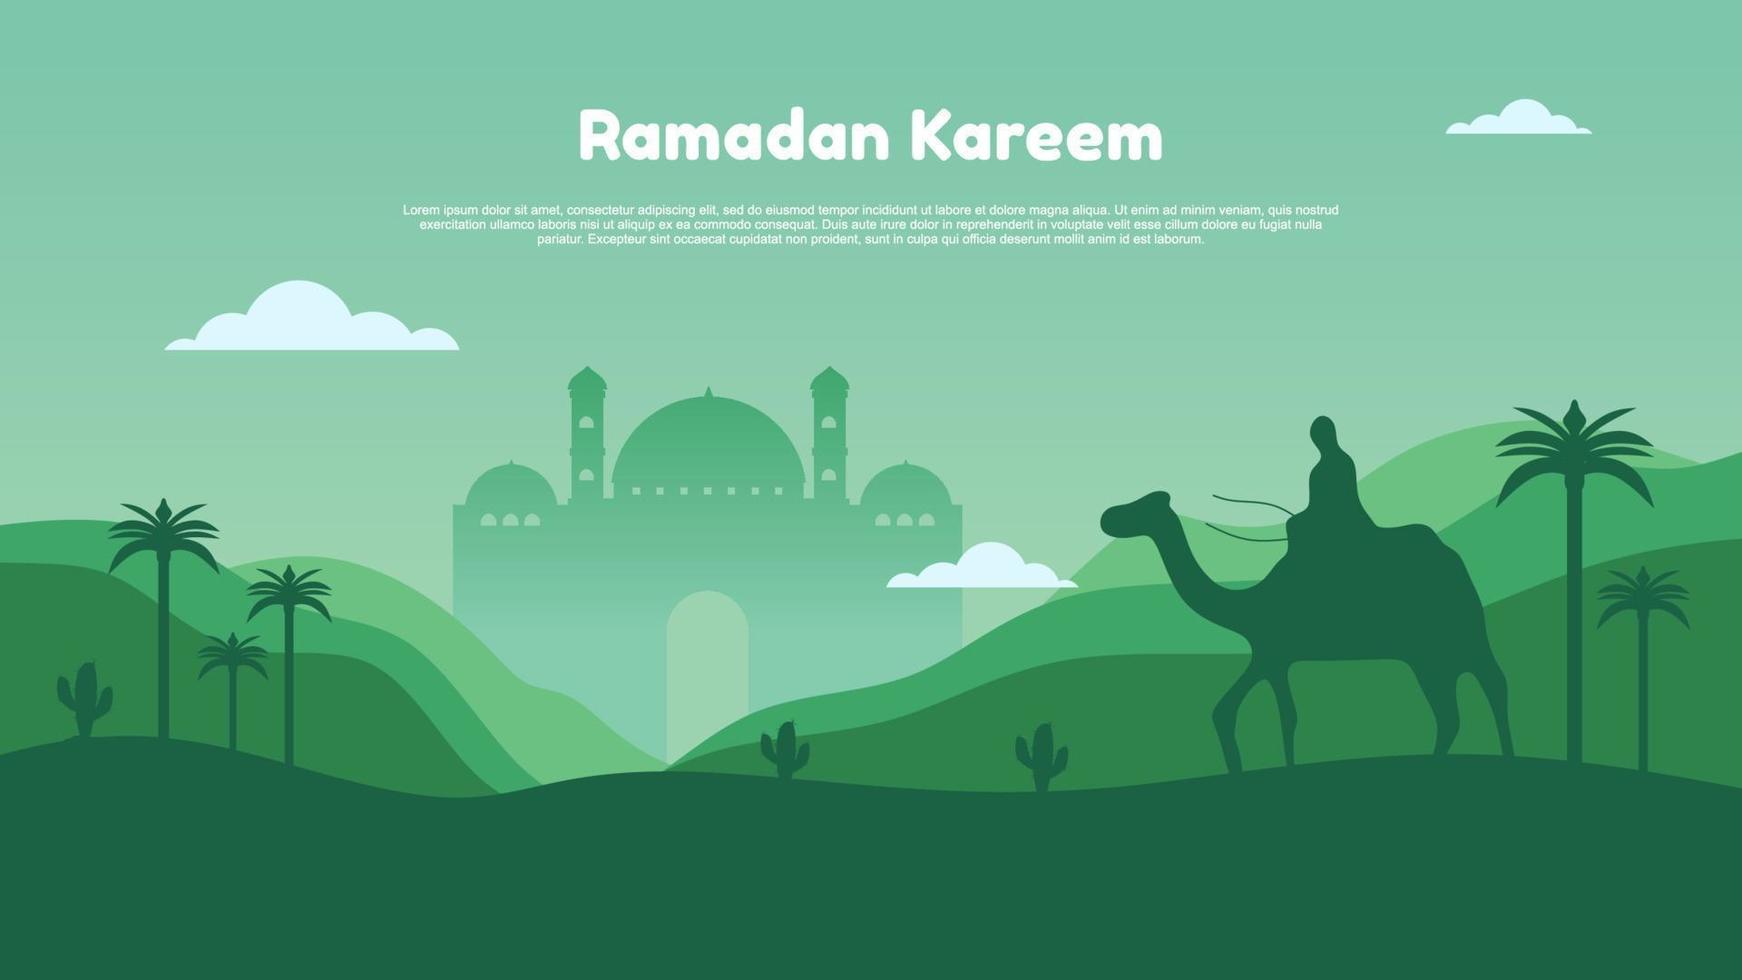 Ramadan kareem avec mosquée, lune, forêt et gens sur chameau. vecteur